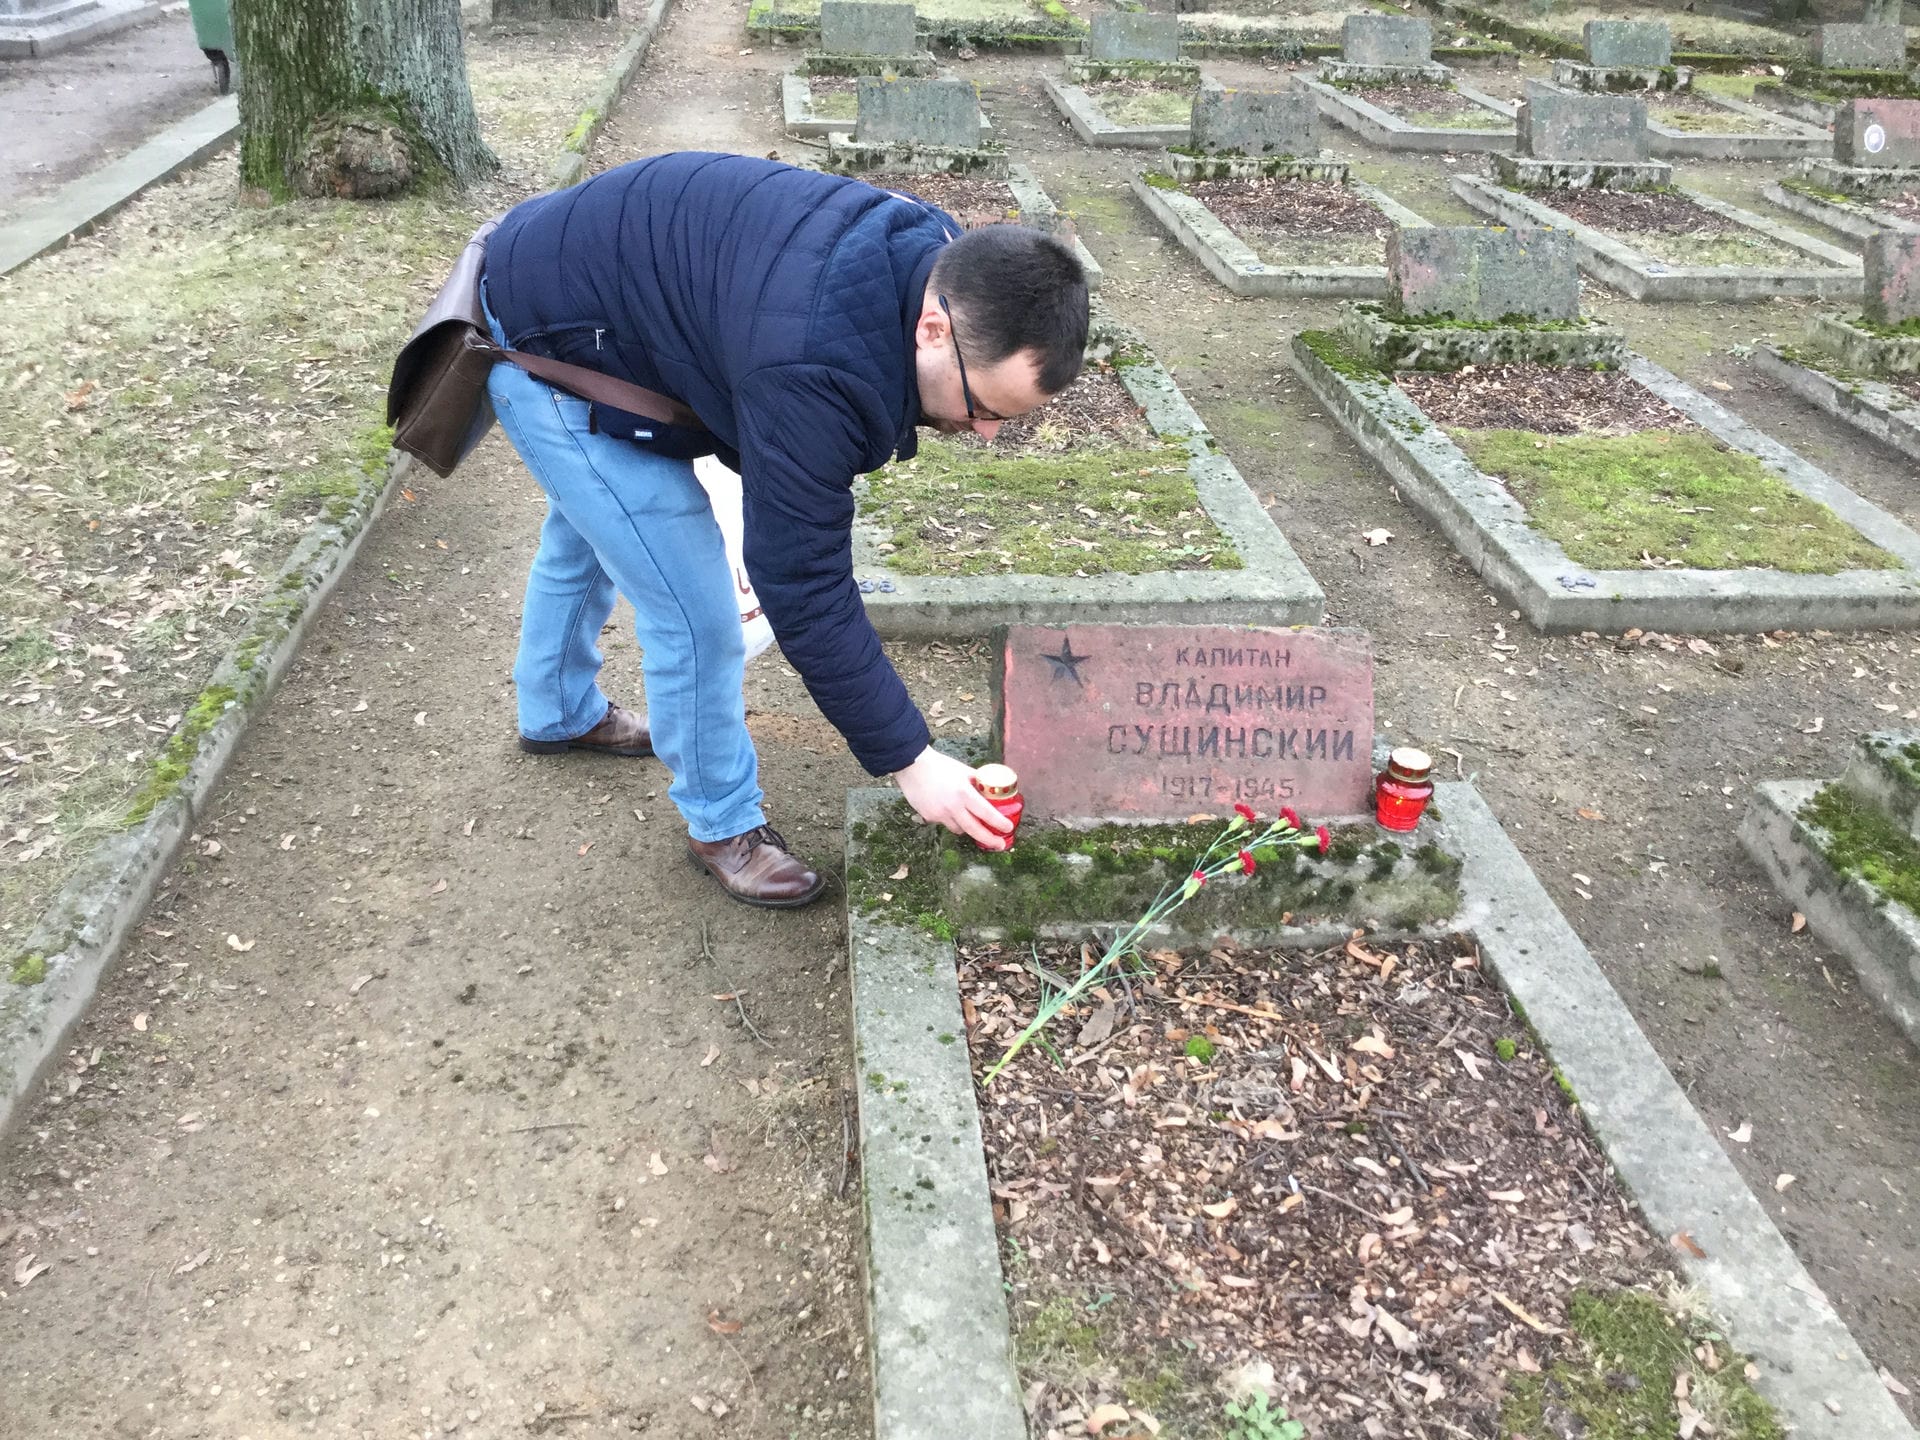 Ченстоховская общественность рассматривает вопрос об установлении таблички на могиле Сущинского